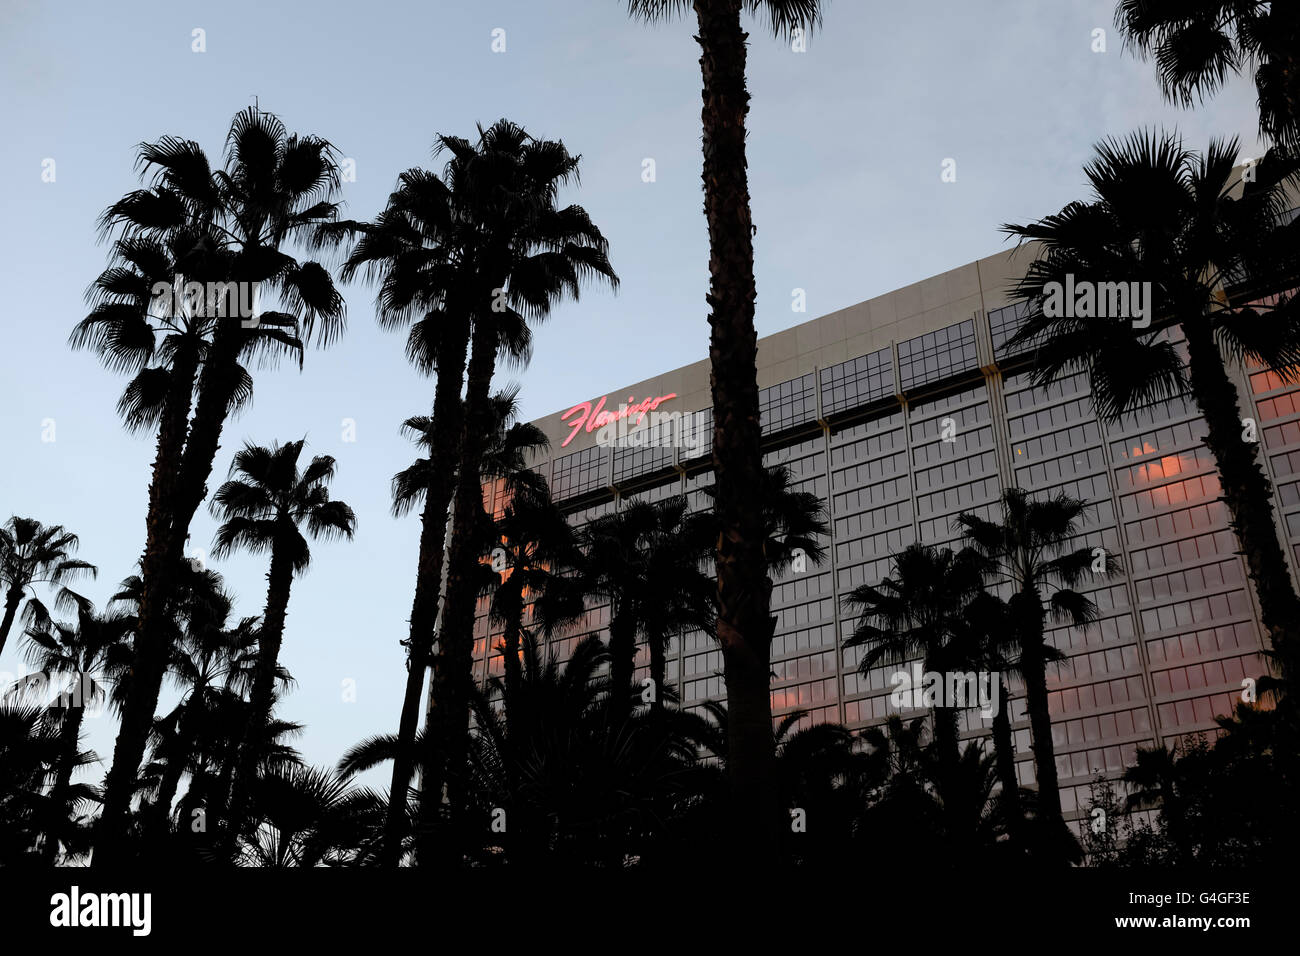 Flamingo Hotel, Las Vegas. Banque D'Images